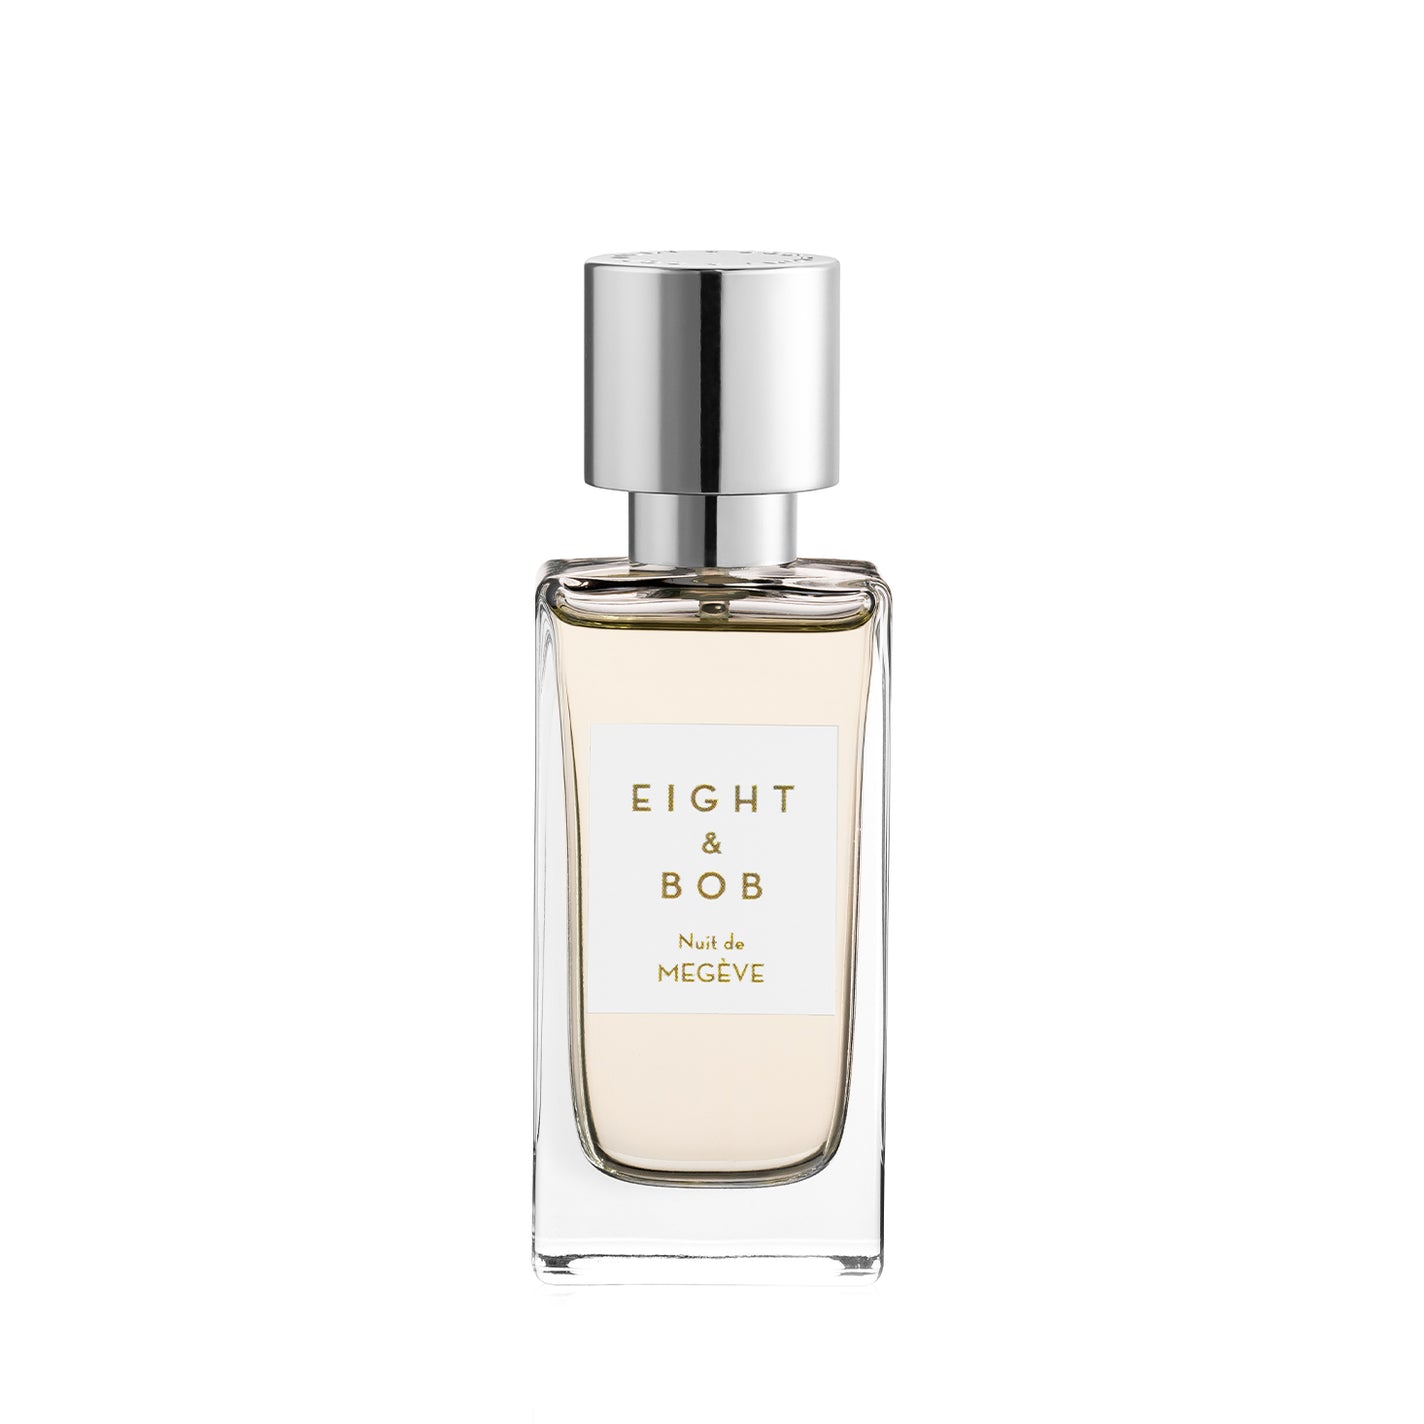 Eight & Bob Nuit de Megeve Eau de Parfum - 30ml